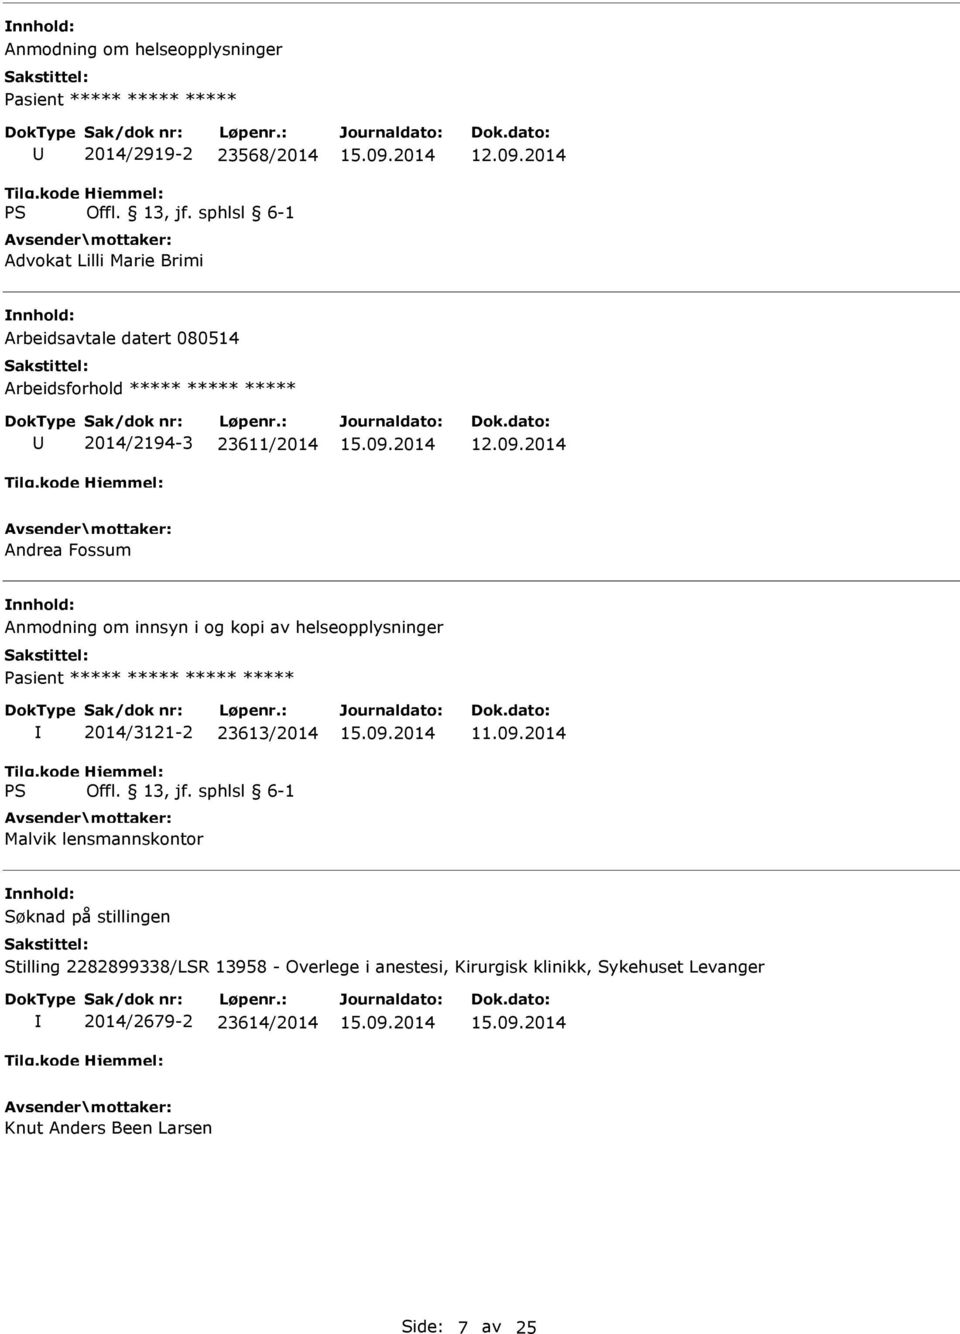 innsyn i og kopi av helseopplysninger 2014/3121-2 23613/2014 Malvik lensmannskontor Stilling 2282899338/LSR